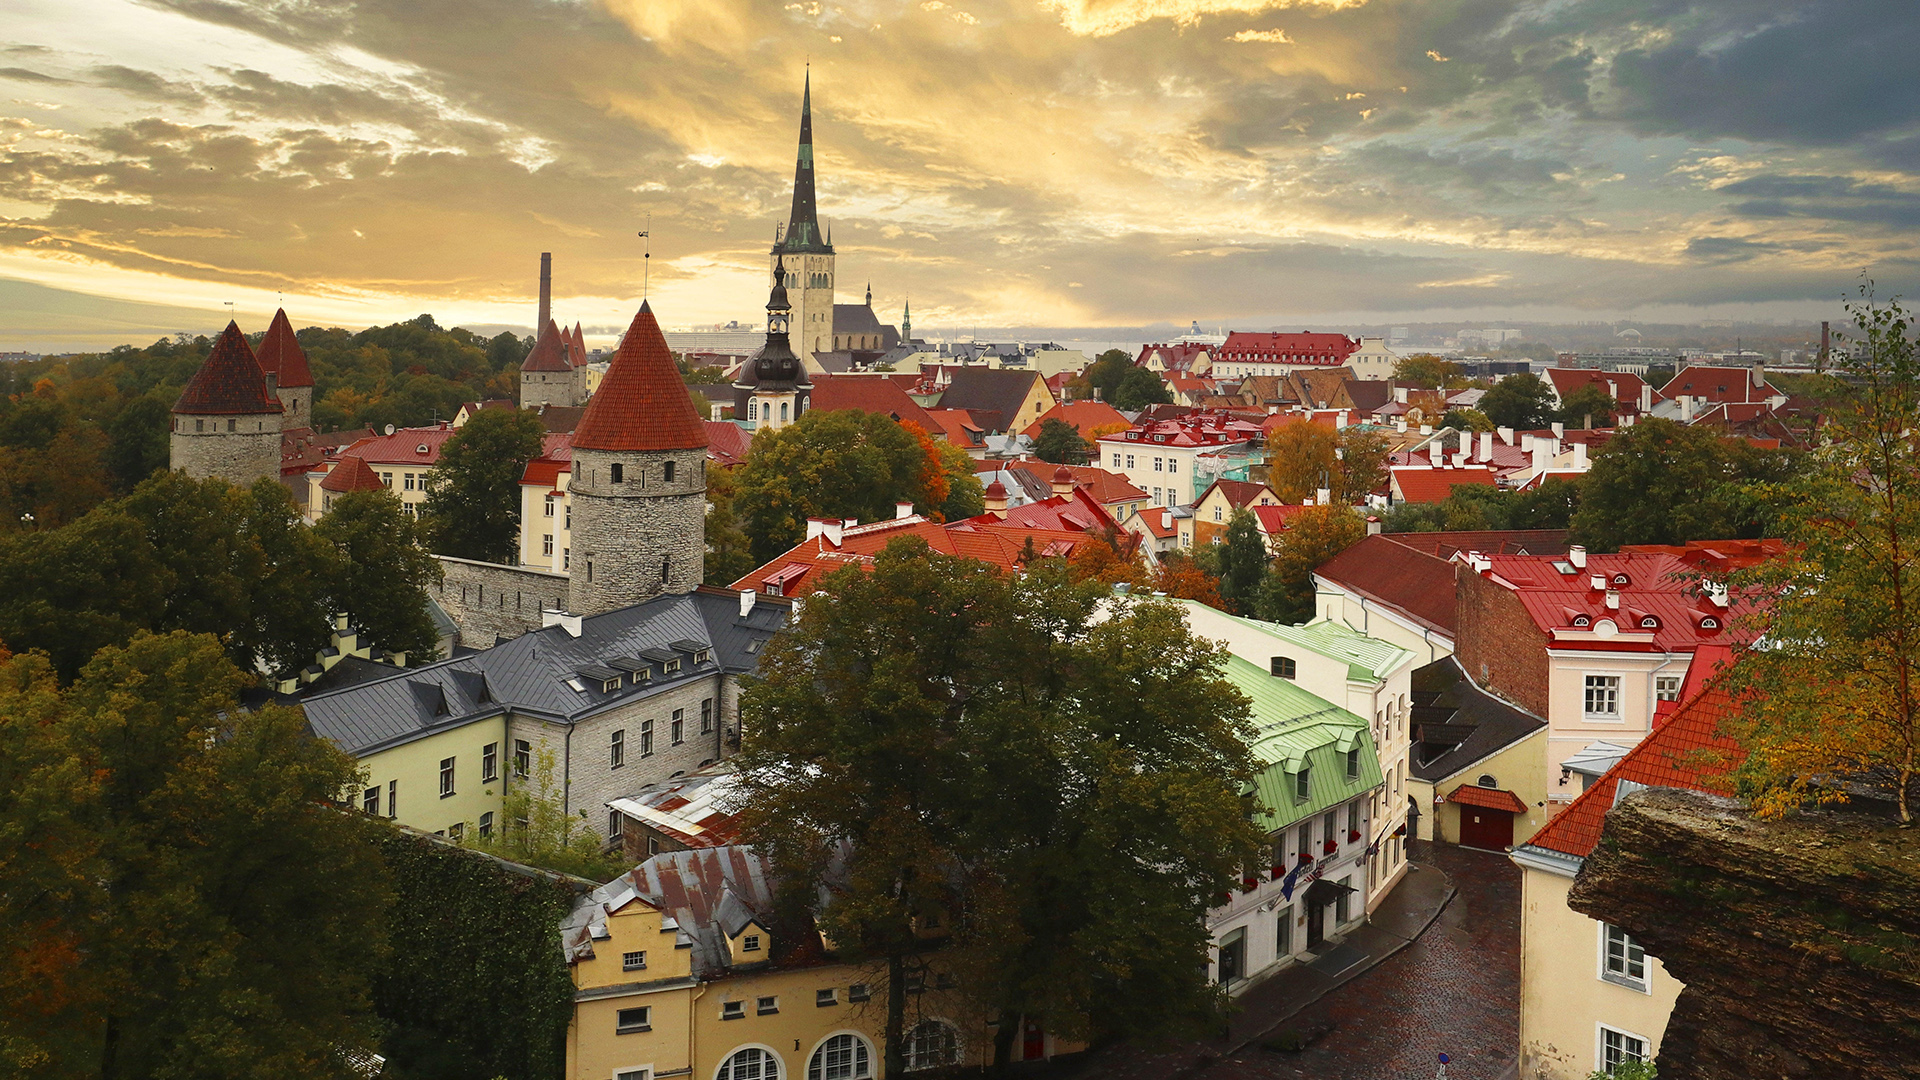 Stadtansicht von Tallin, Estland | picture alliance / Zoonar